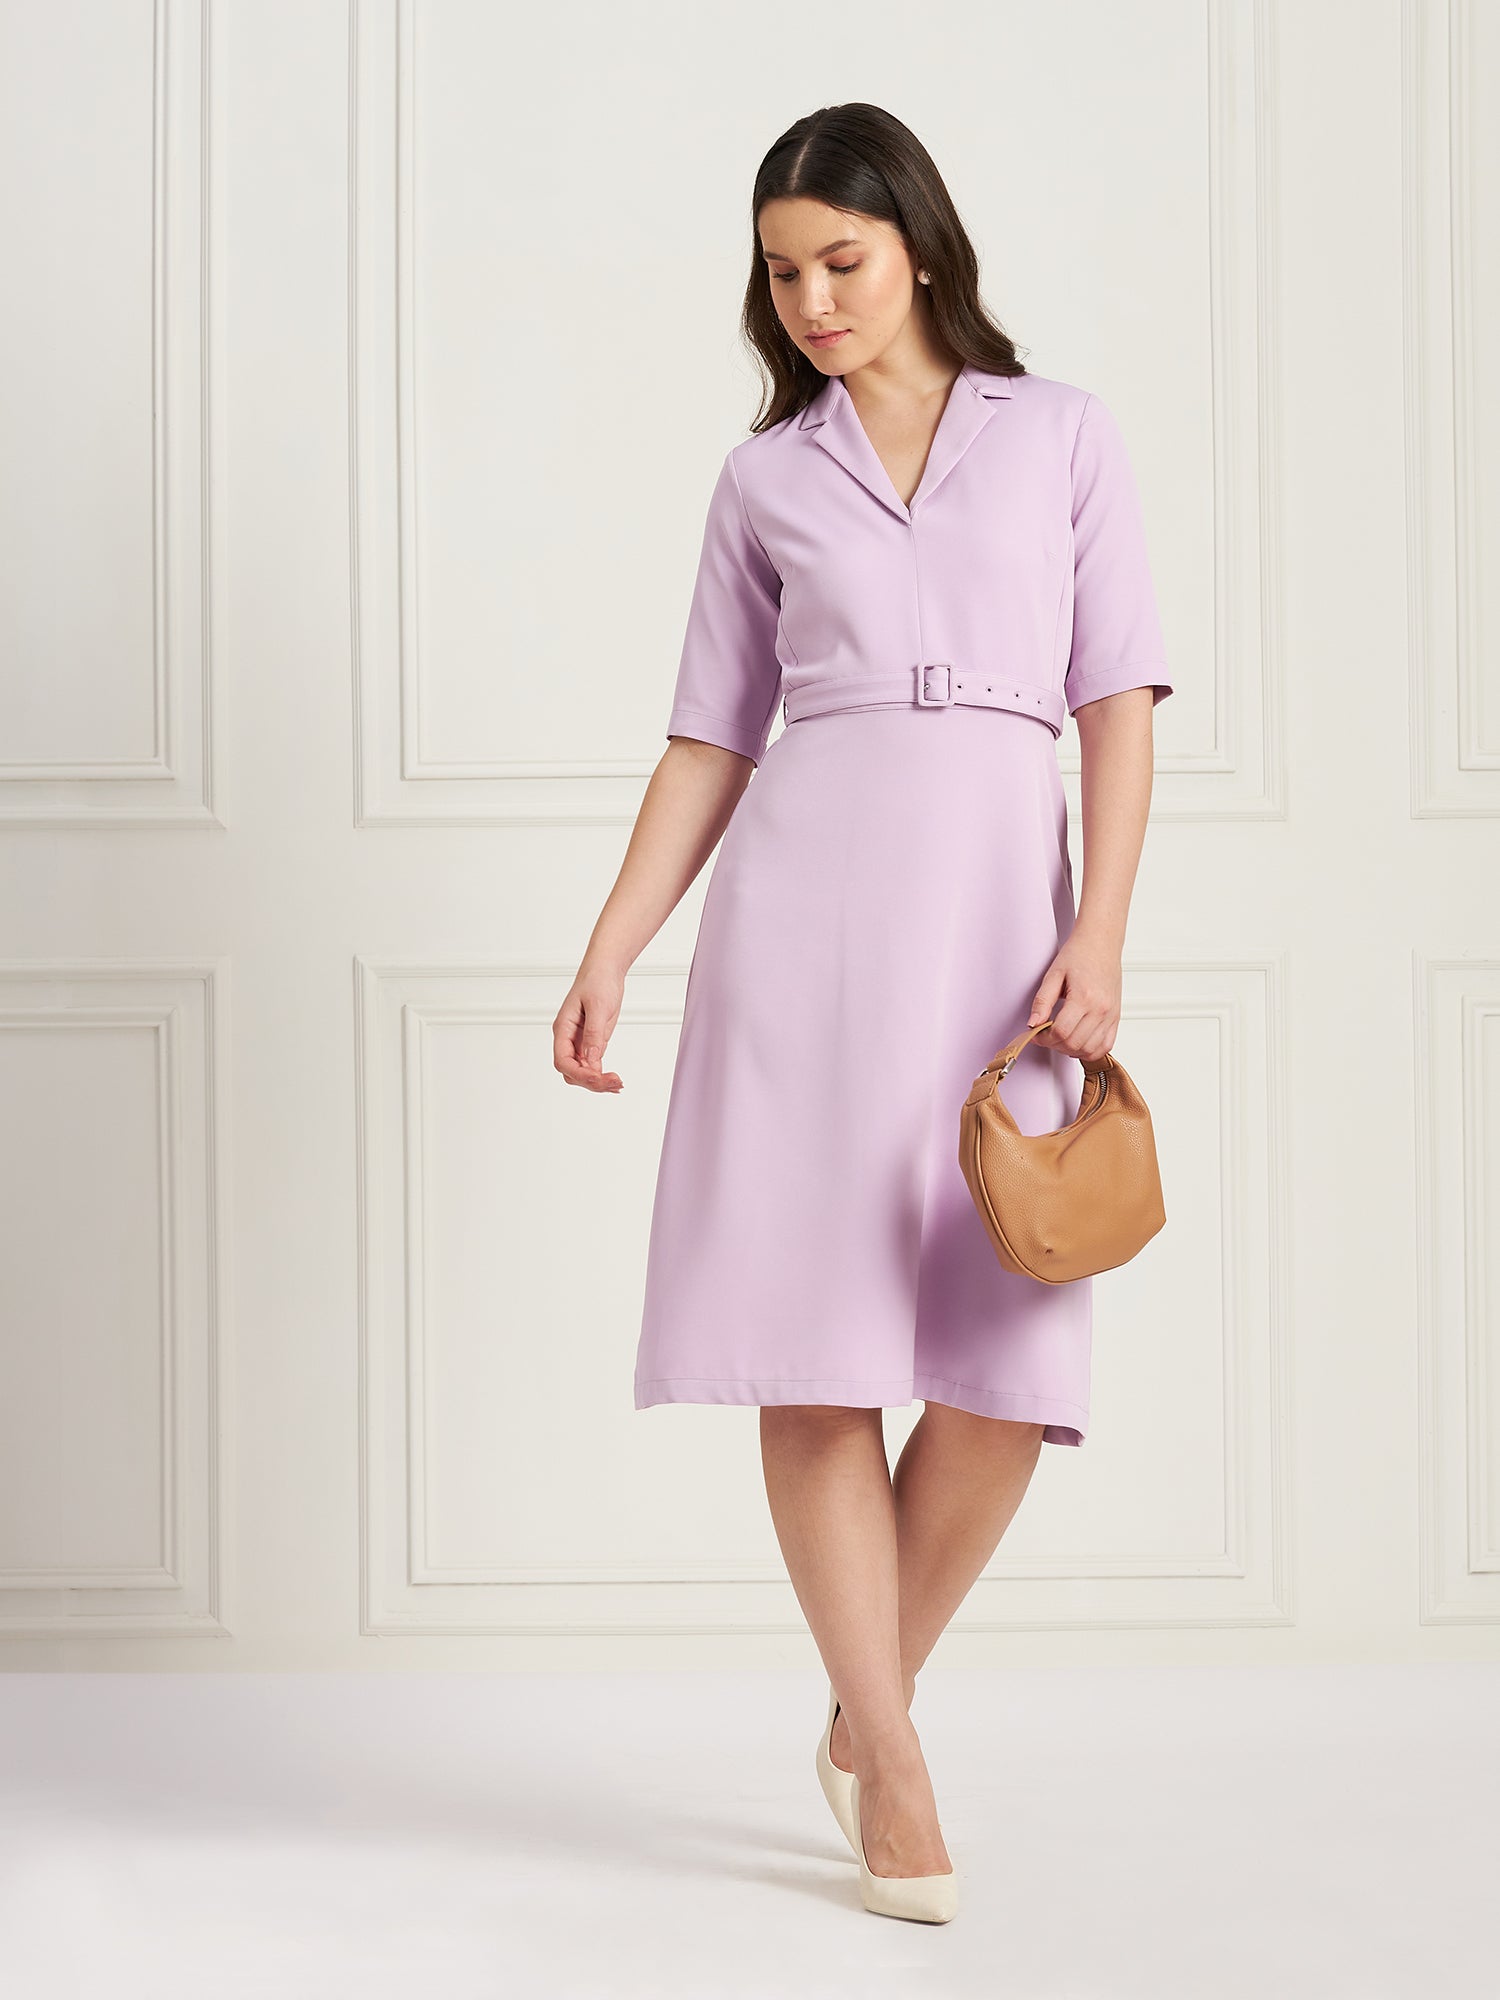 Simpatico Collared Dress-Lavender